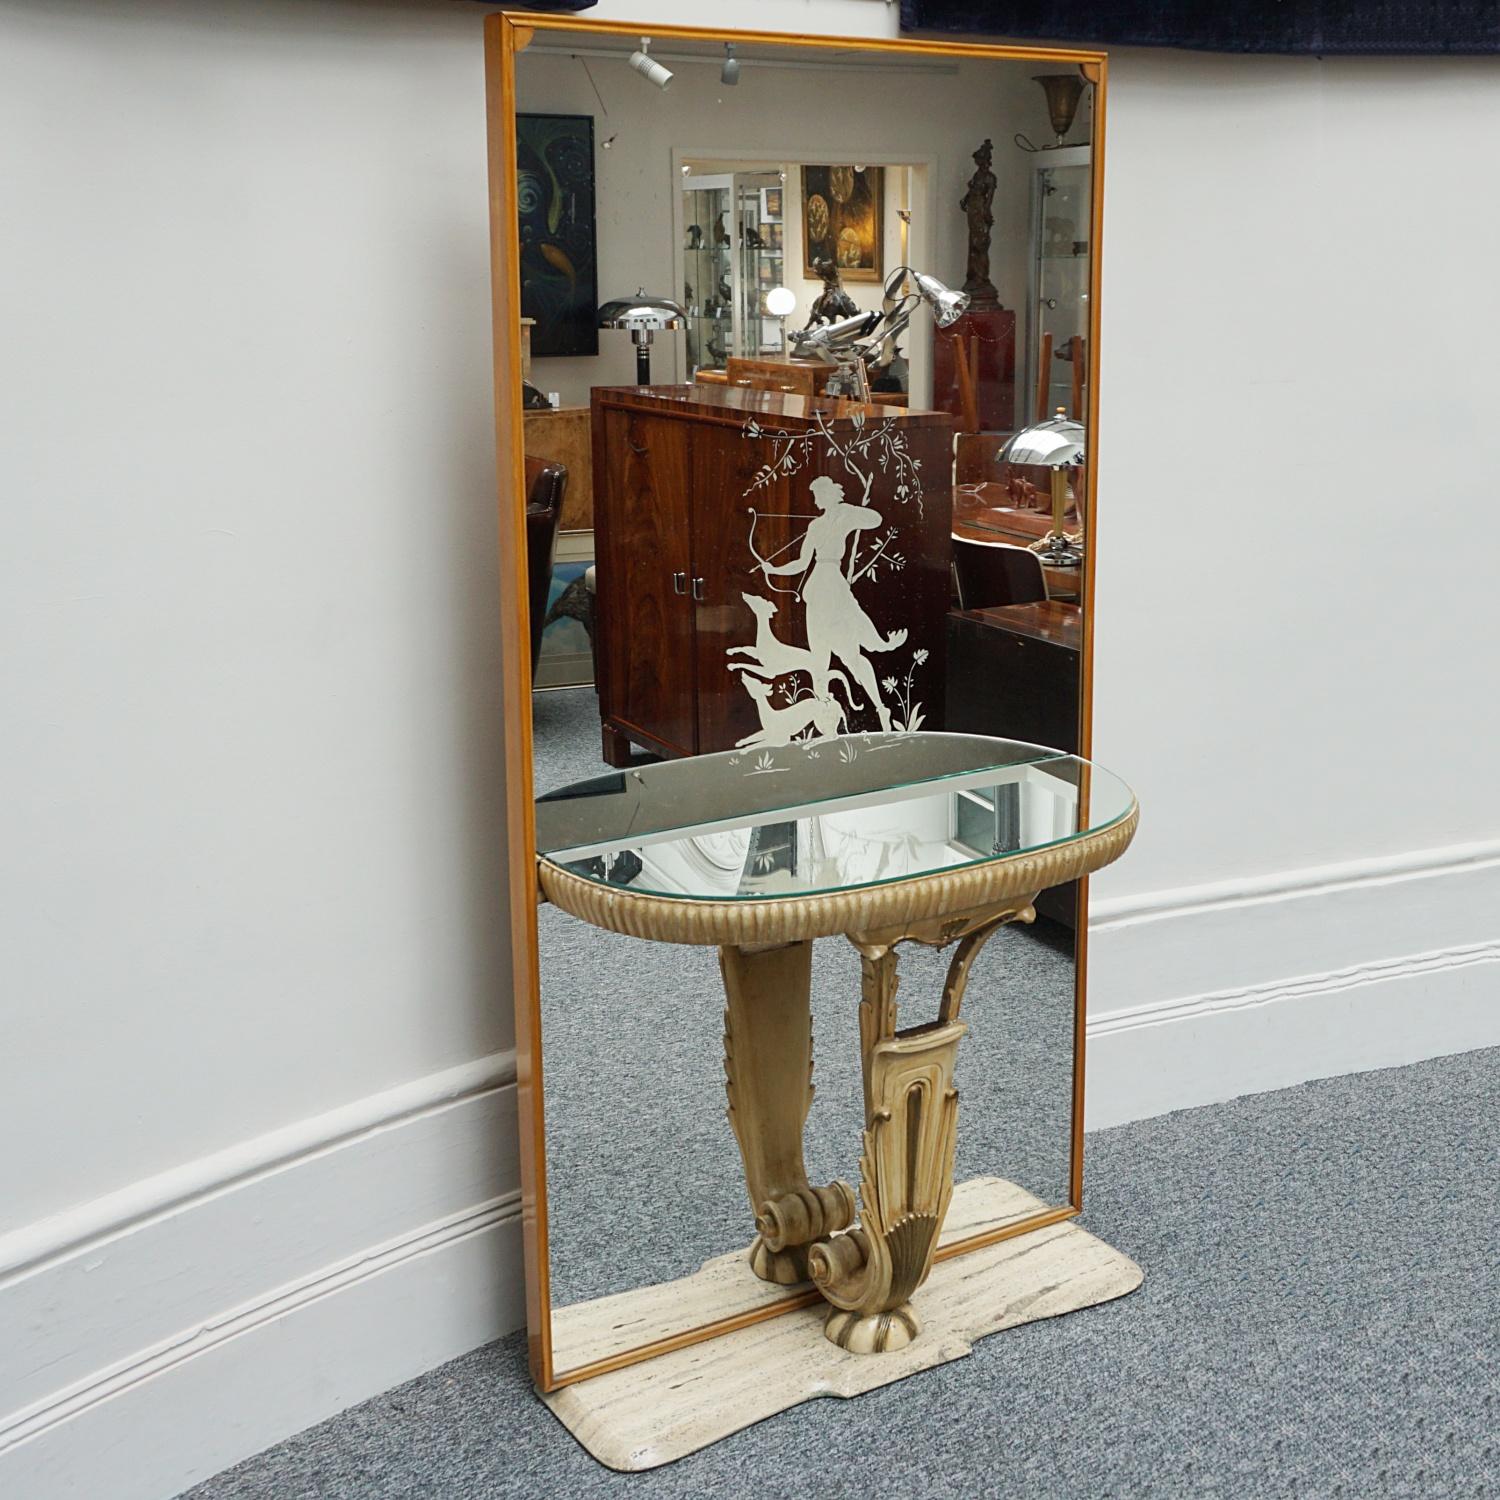 Console à miroir Art déco de Fontana Arte Milano avec verre décoré original représentant Diane la chasseresse. Console en miroir sur un support en bois sculpté et doré, peinture d'origine. Le tout est posé sur une base marbrée en travertin. 

